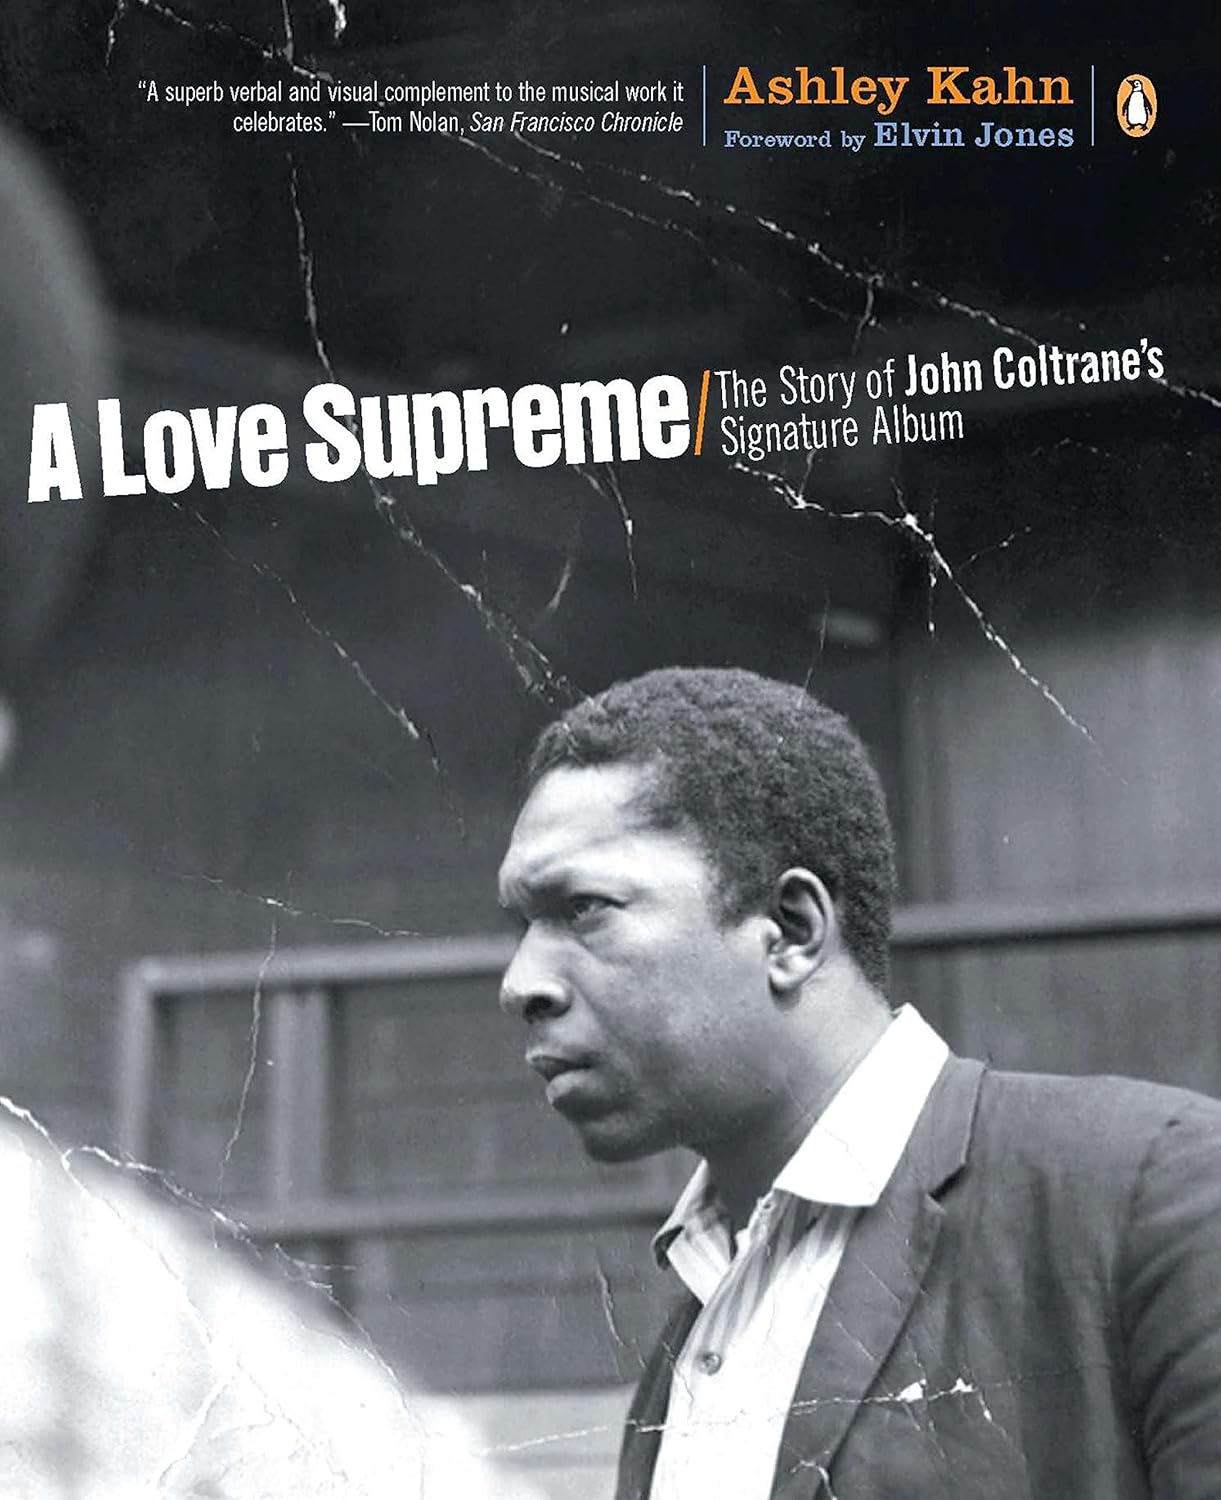 "A Love Supreme" The Story of John Coltrane's Signature Album